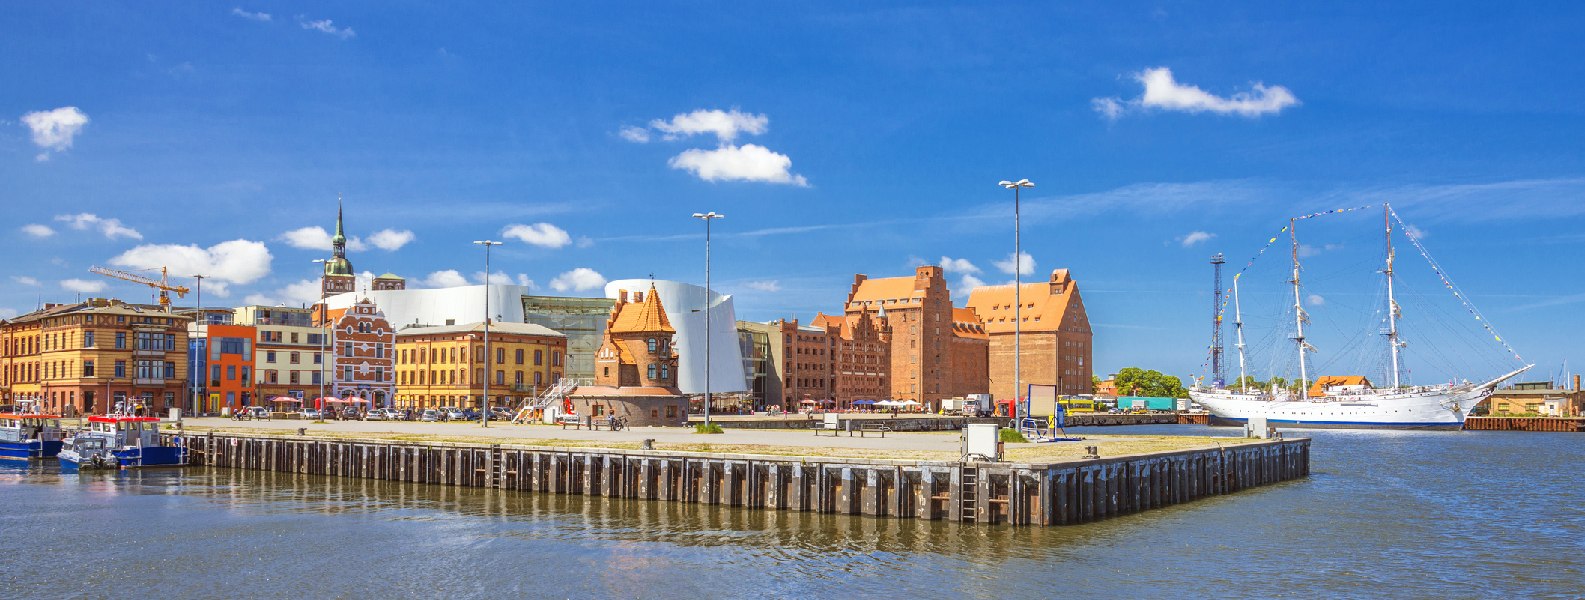 HeroImage_Blog-Stralsund-Hafen, © Gettyimages, Juergen Sack